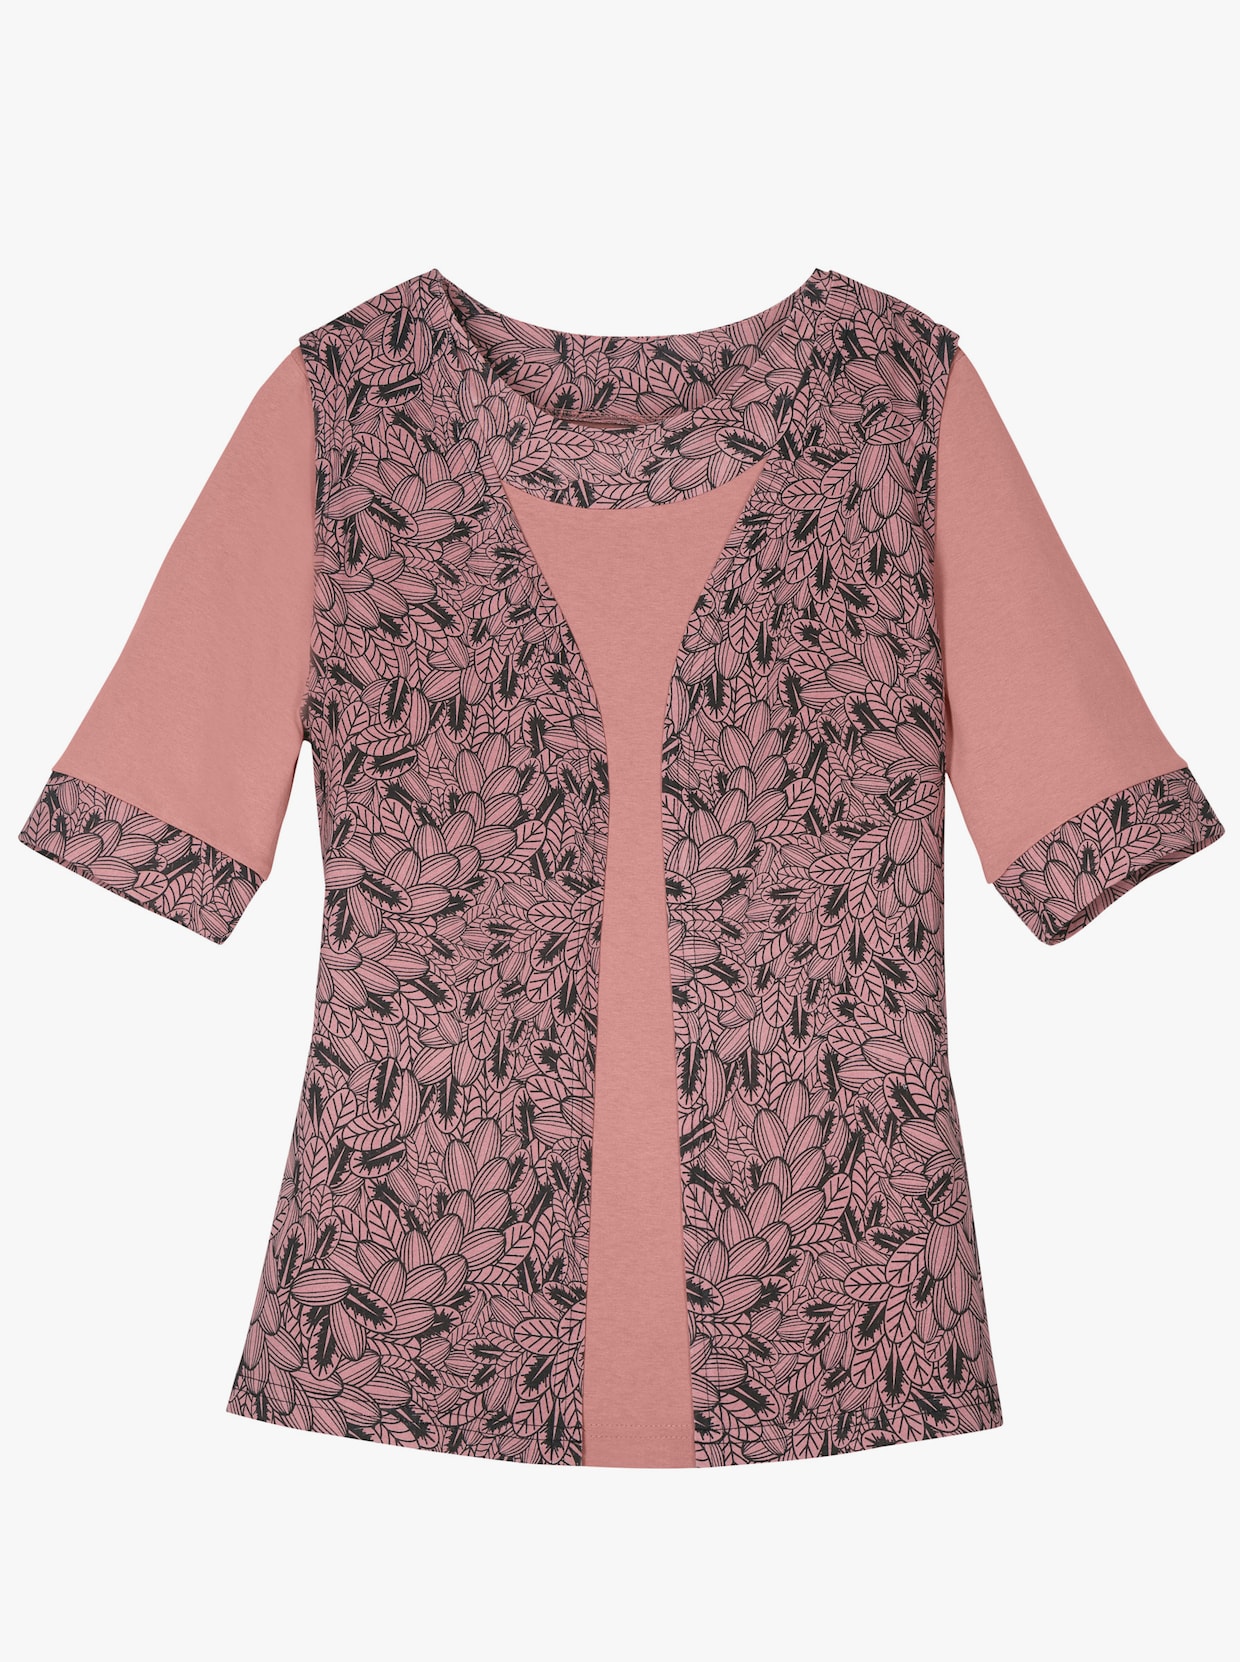 Sada triček - růžové dřevo + růžové dřevo-vzor